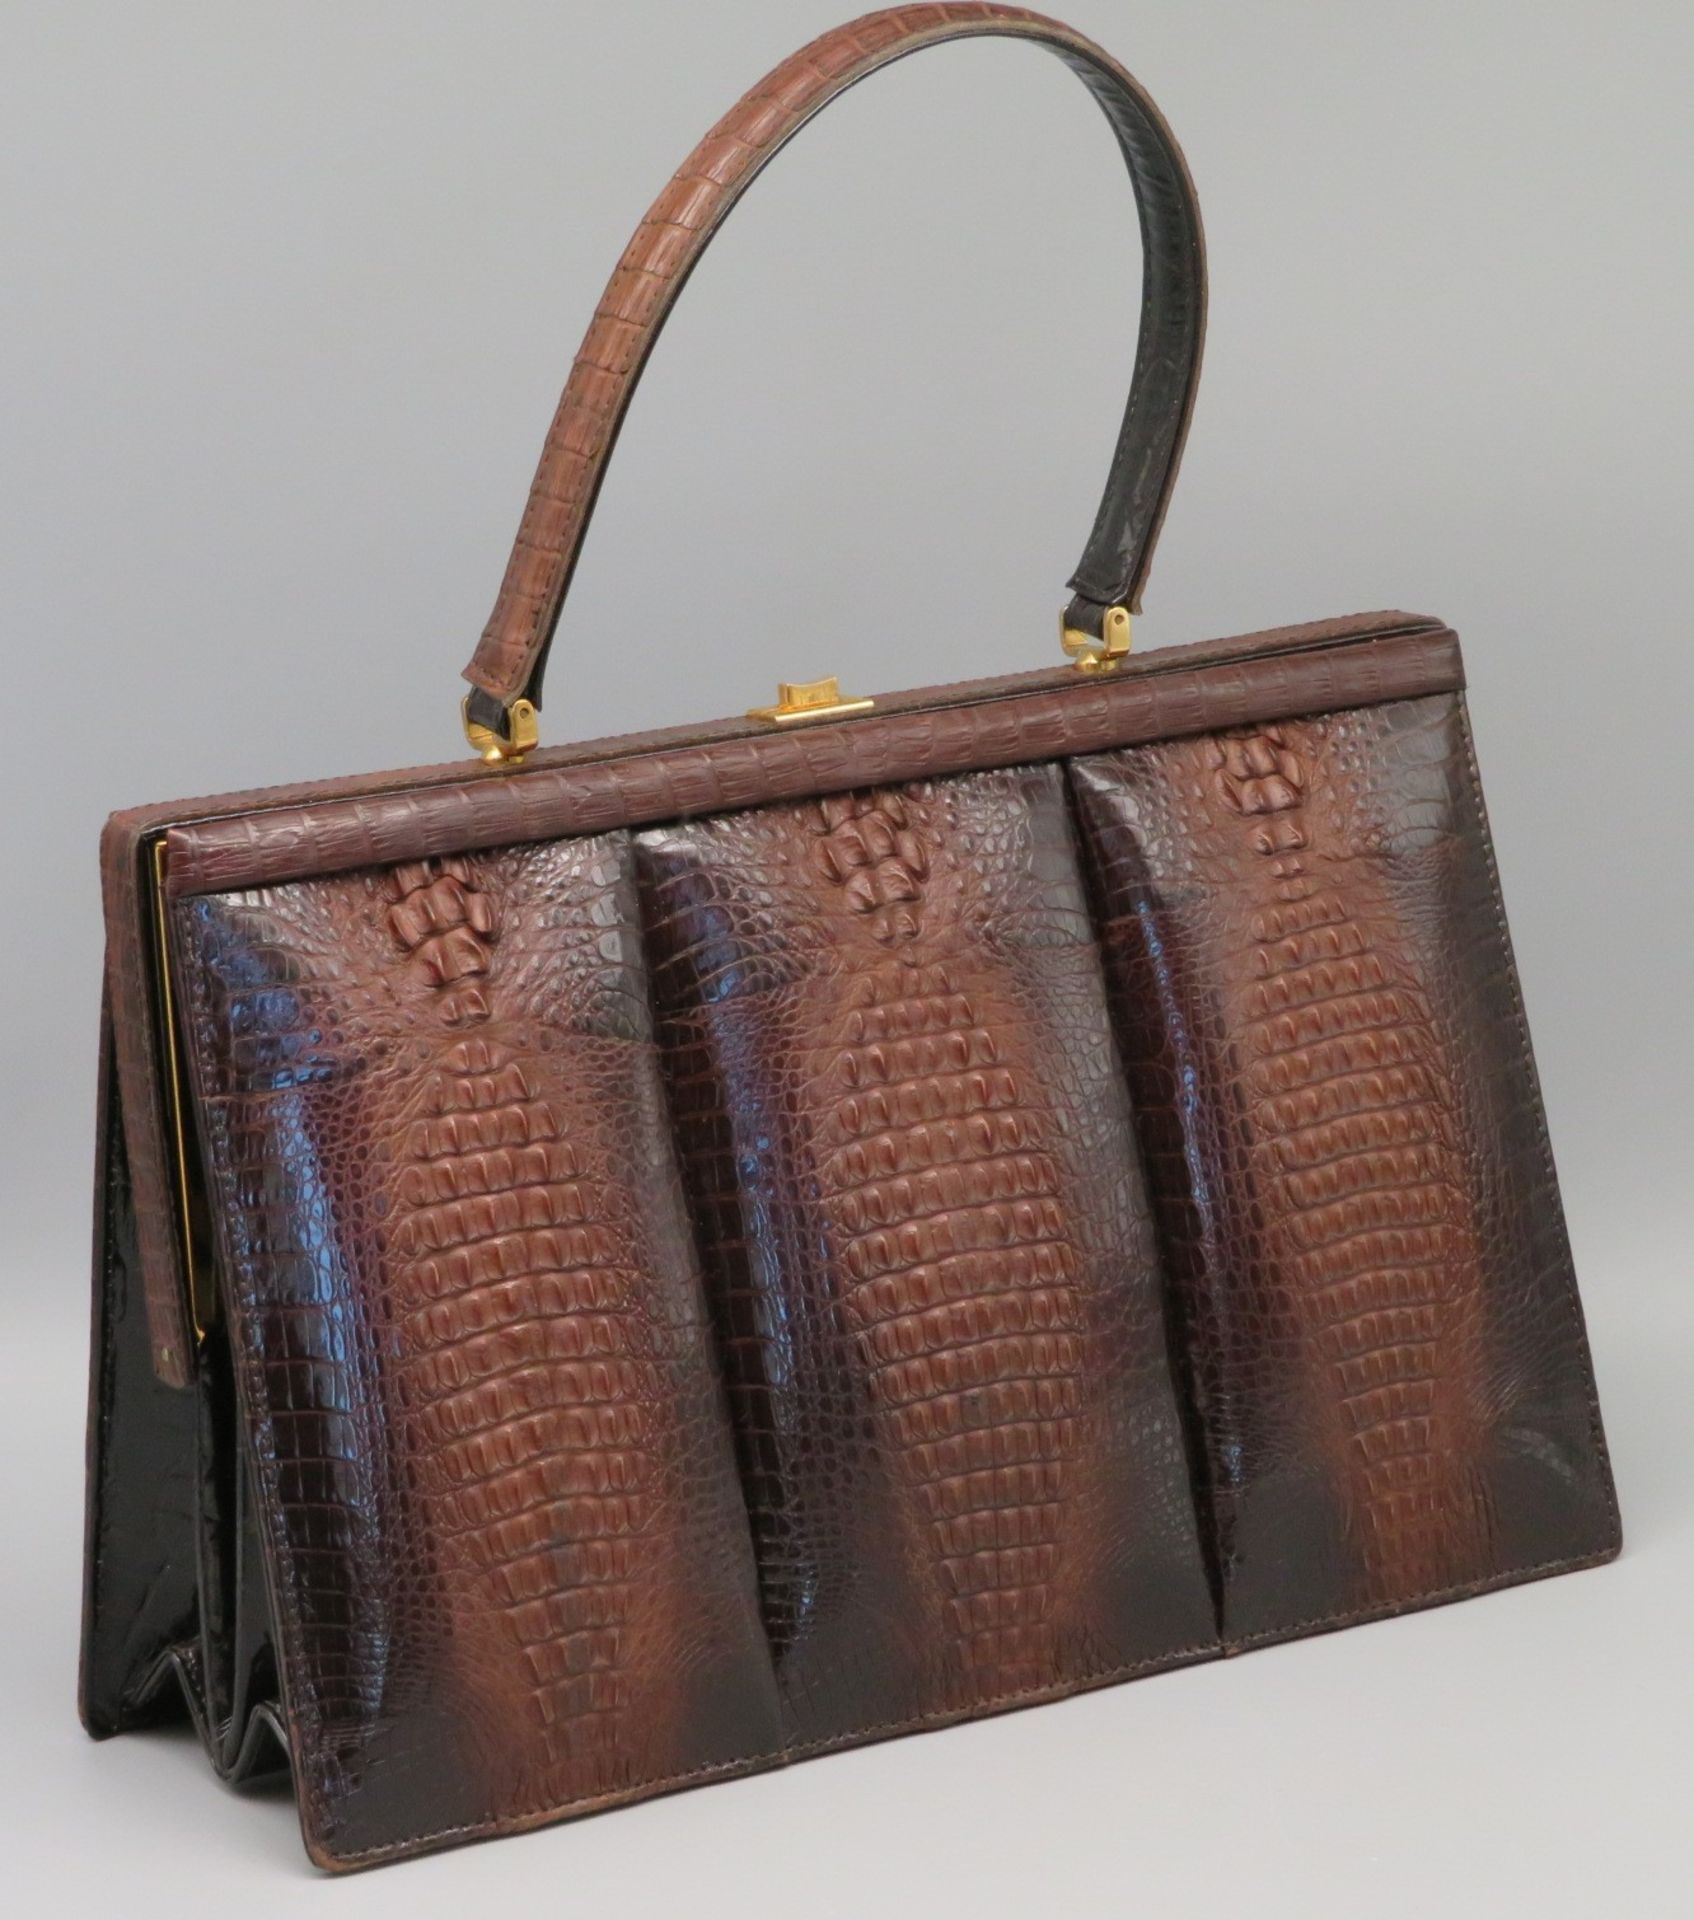 ZURÜCKGEZOGEN/WITHDRAWN - Vintage Handtasche, 1950/60er Jahre, Kroko braun,